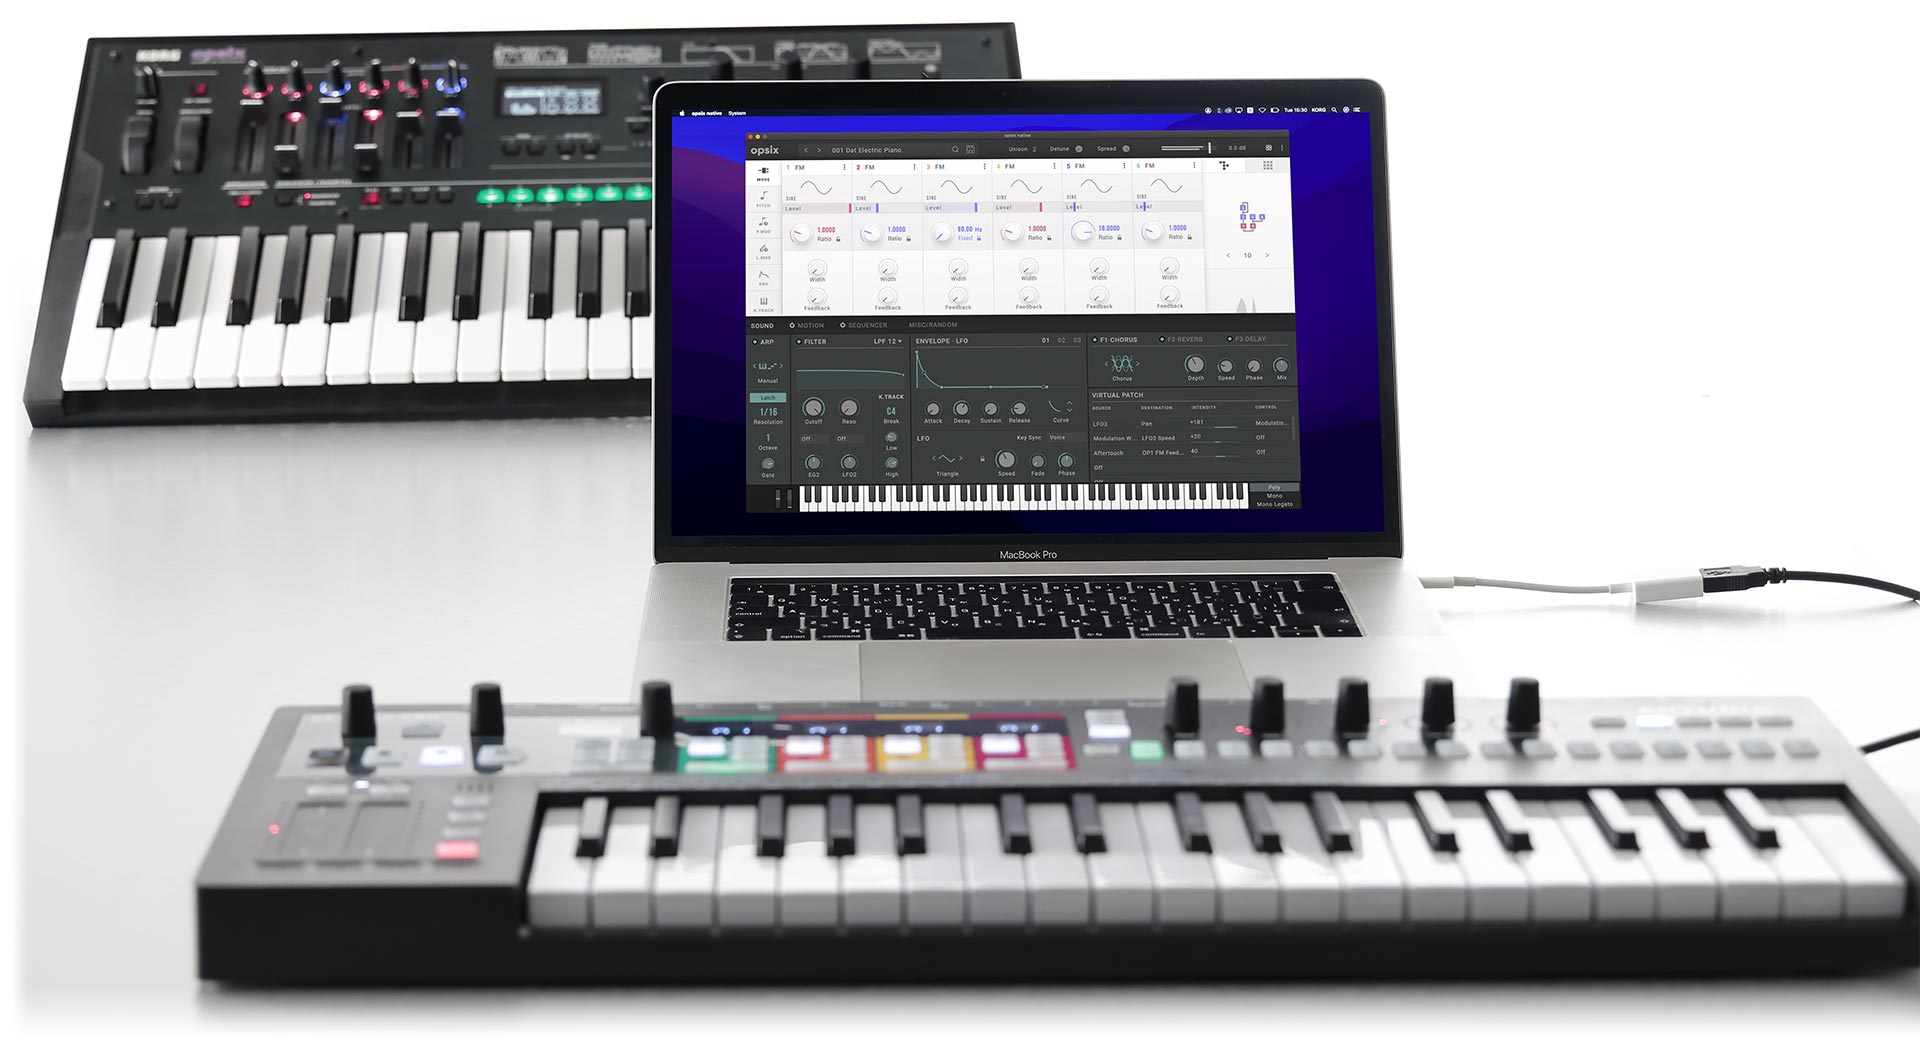 Un soberbio conjunto de tecnología sonora compuesto de Korg opsix native en un MacBook, sobre la imagen del hardware anterior opsix con teclado, y el maravilloso teclado MIDI avanzado KeyStep Pro de Arturia